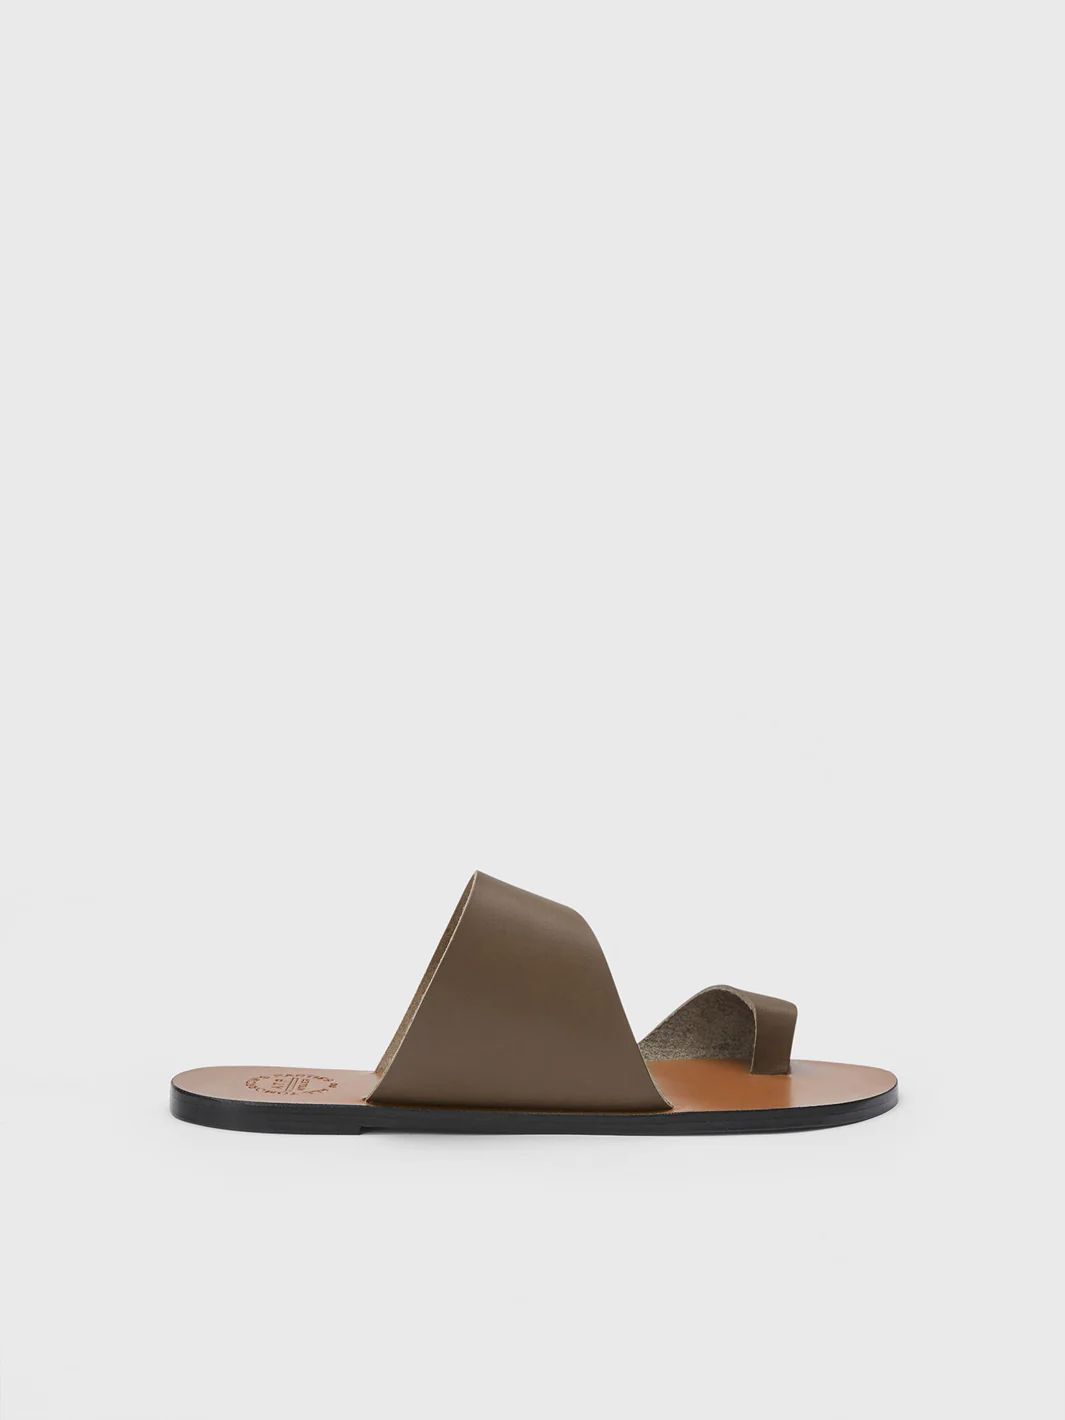 Centola Khaki Brown Leather Cutout sandals | ATP Atelier